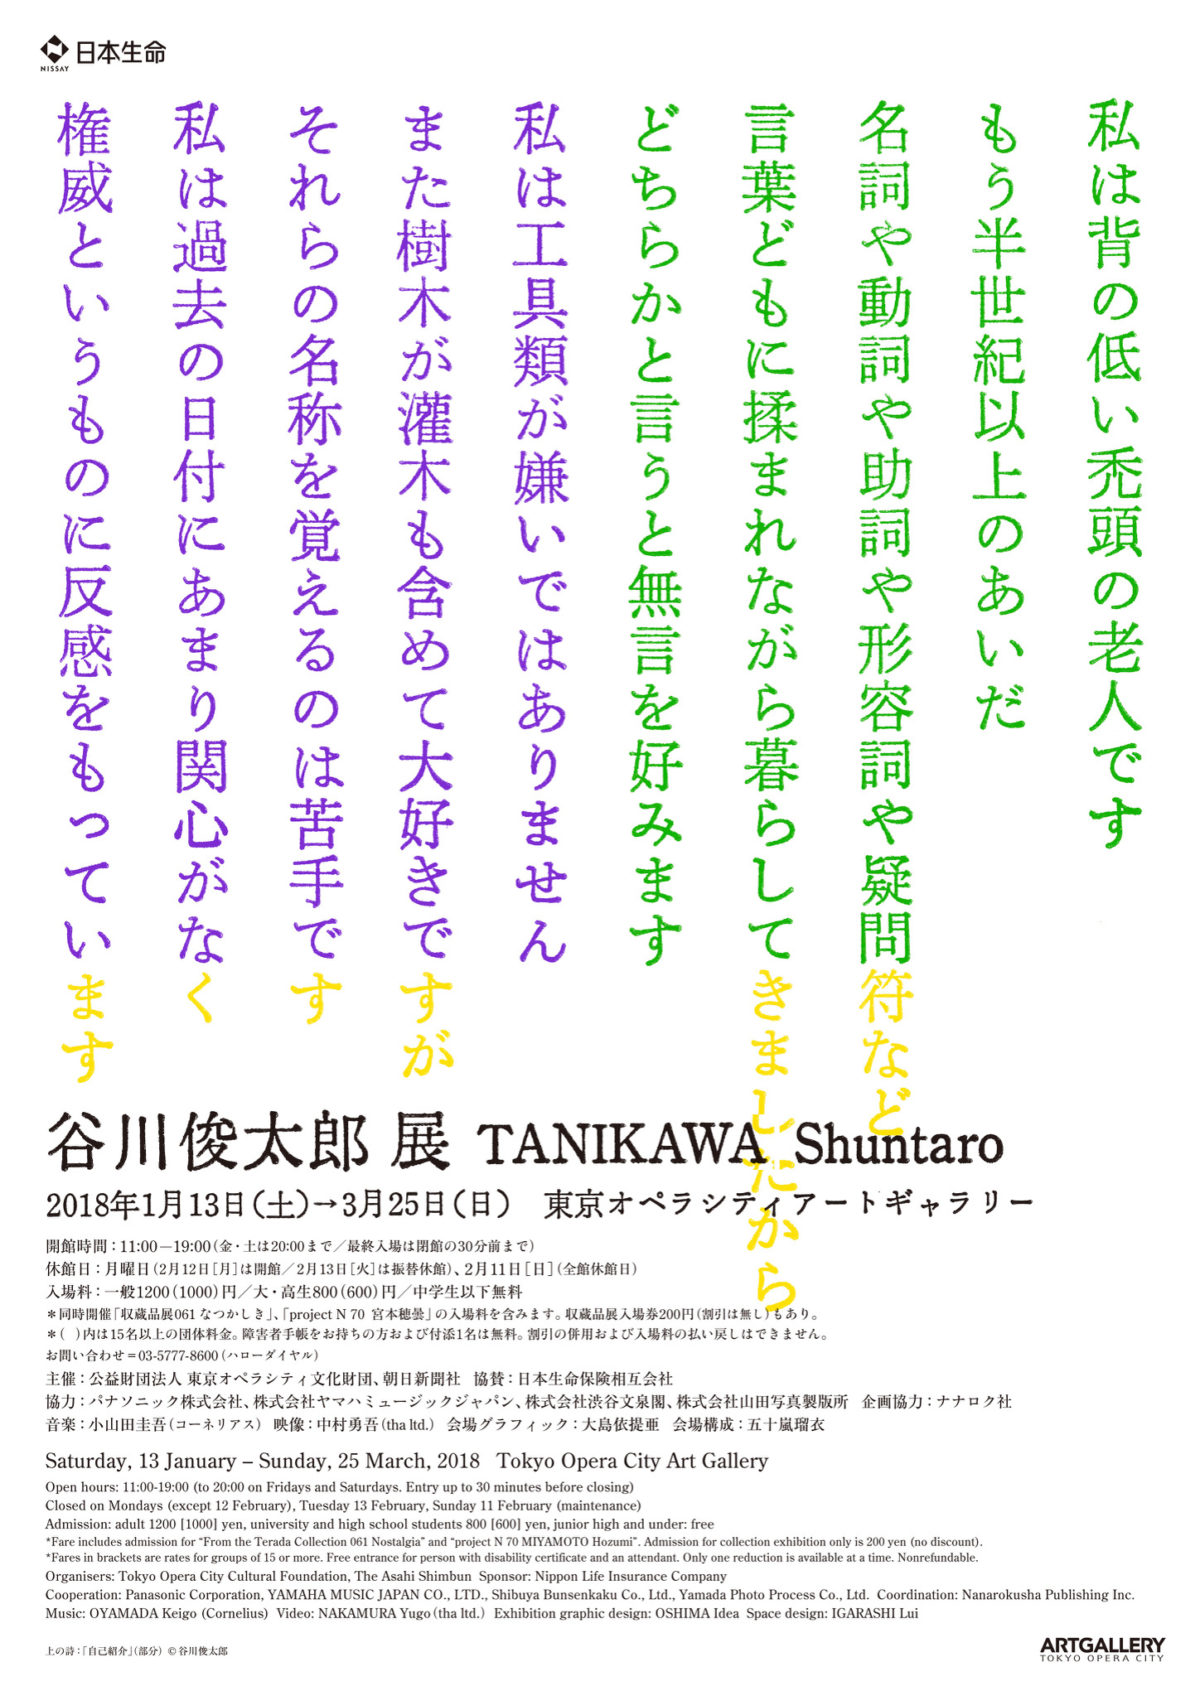 tanikawaten_fryer1